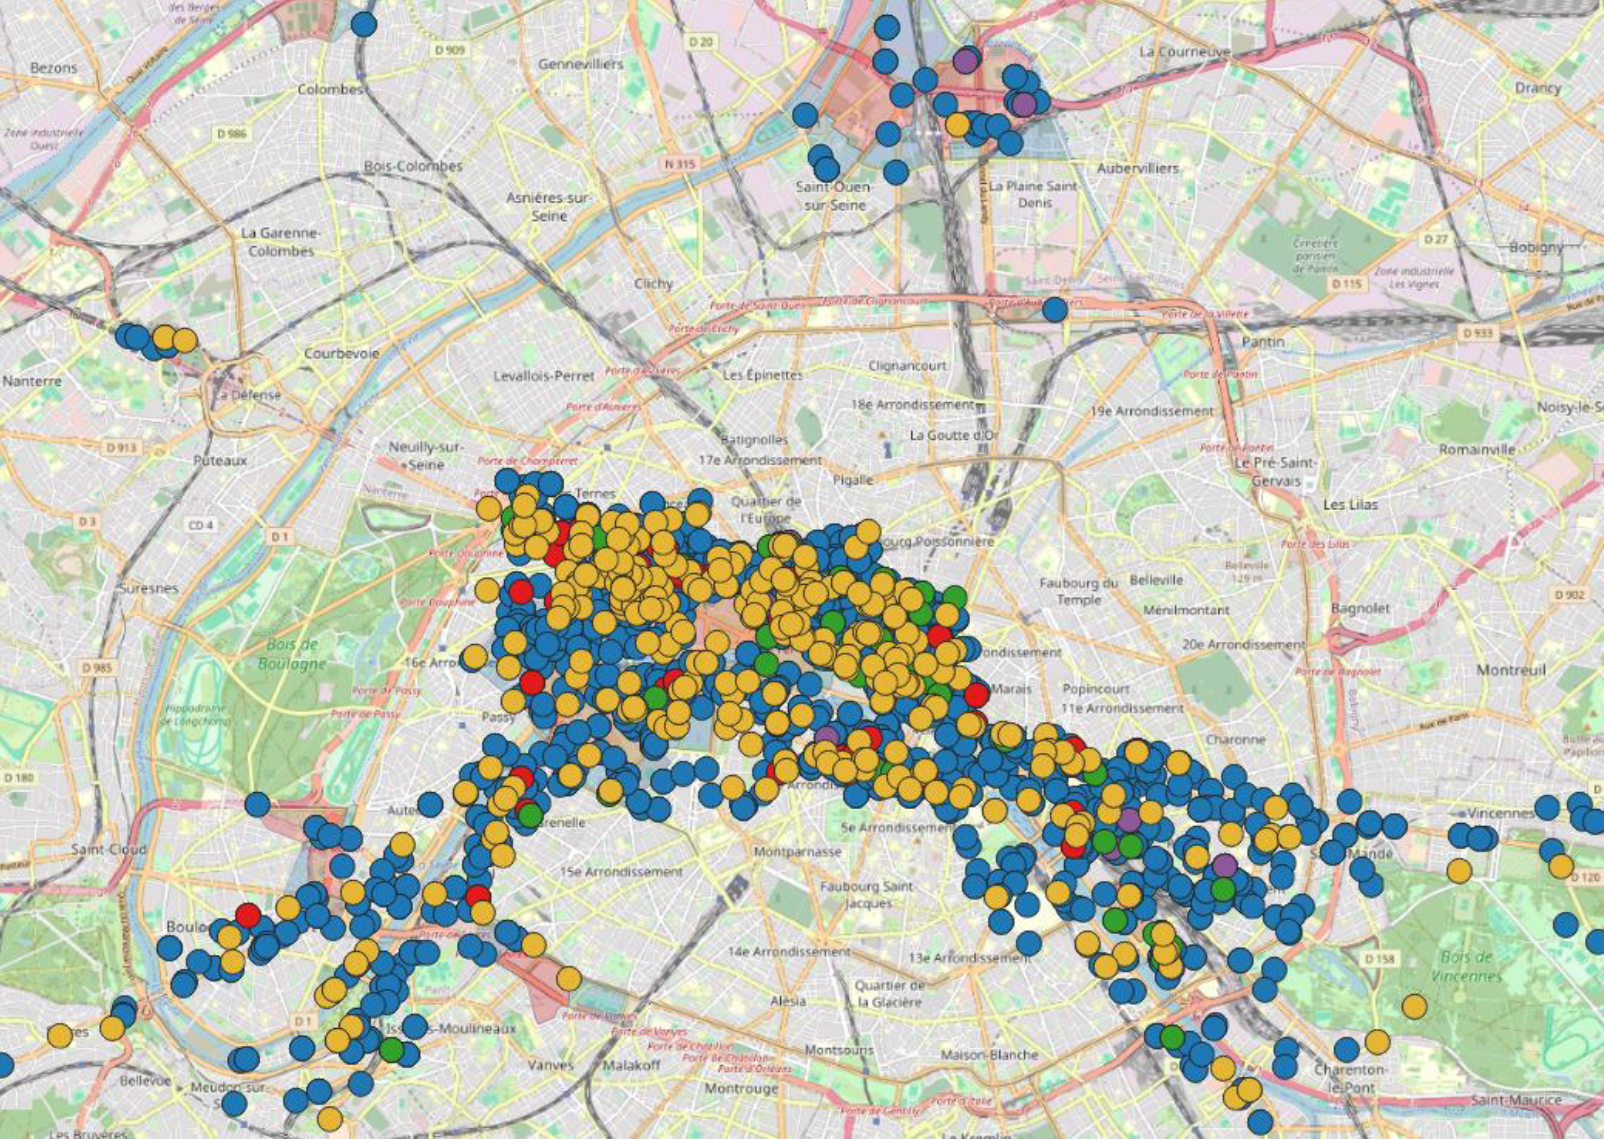 La carte interactive permet notamment de trouver les points de livraisons libres, ou encore ceux situées en zones bleues et rouges. ©Lujop